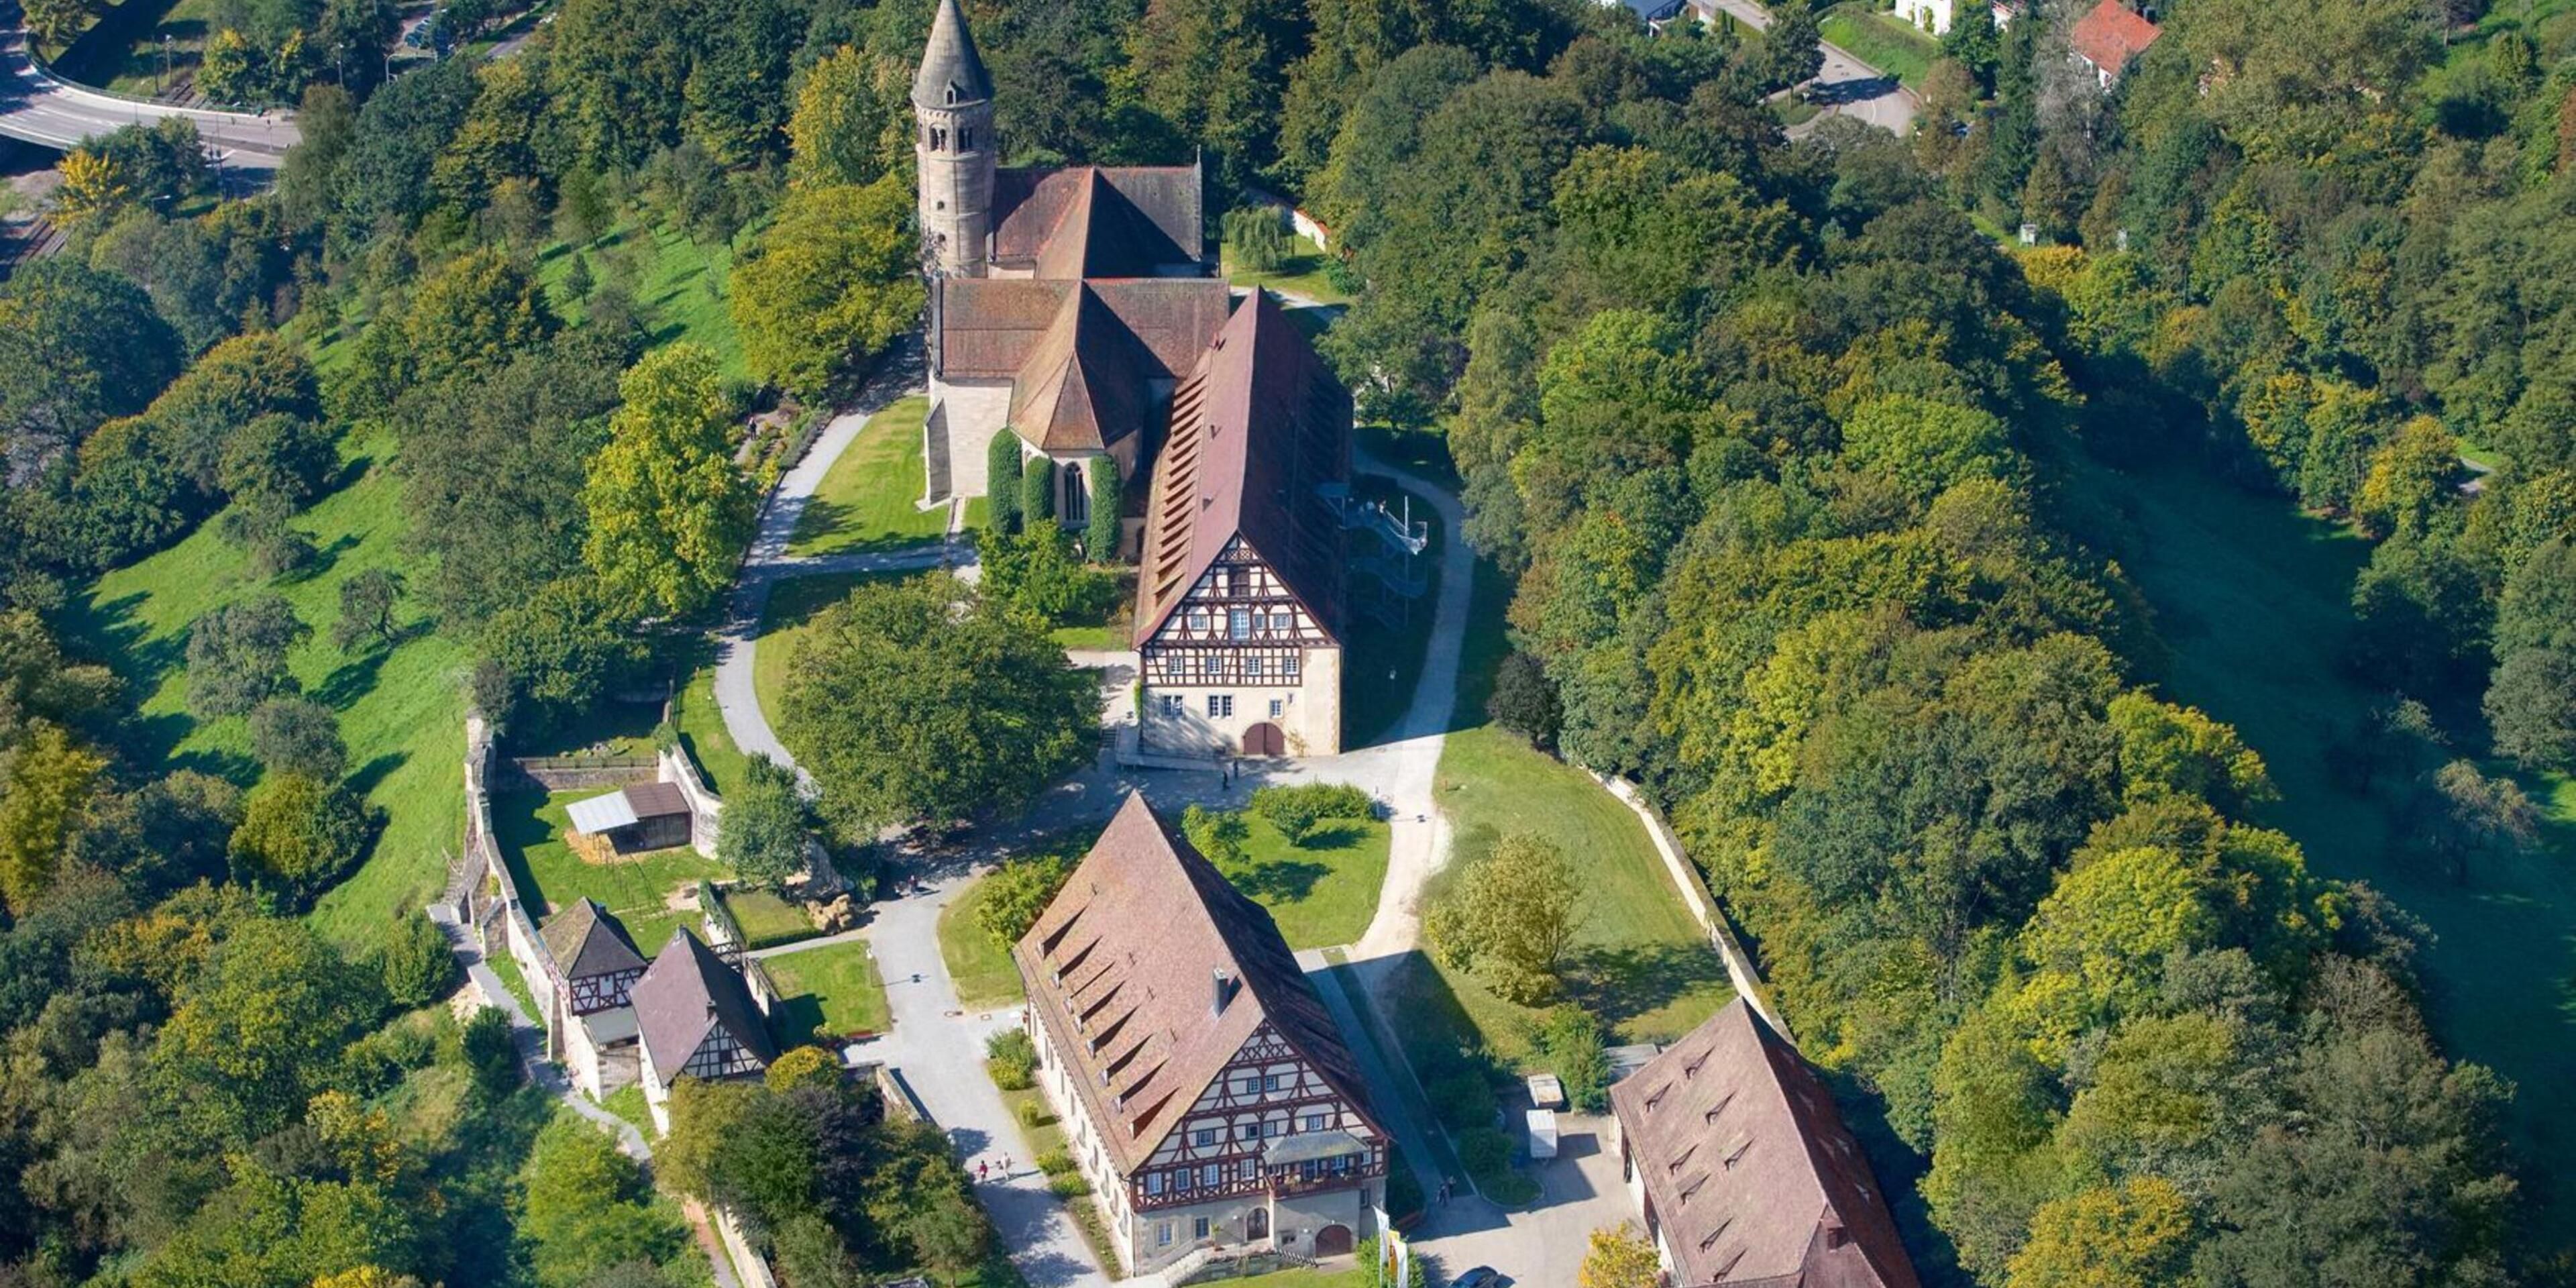 Kloster Lorch im Stauferland ist ein erstaunlicher Ort. Gegründet wurde das Benediktinerkloster als Grablege eines deutschen Kaisergeschlechts. Dieser Beginn der Geschichte als Stiftung der sagenumwobenen Staufer prägte das Kloster und seine Faszination seit jeher – und bis heute.